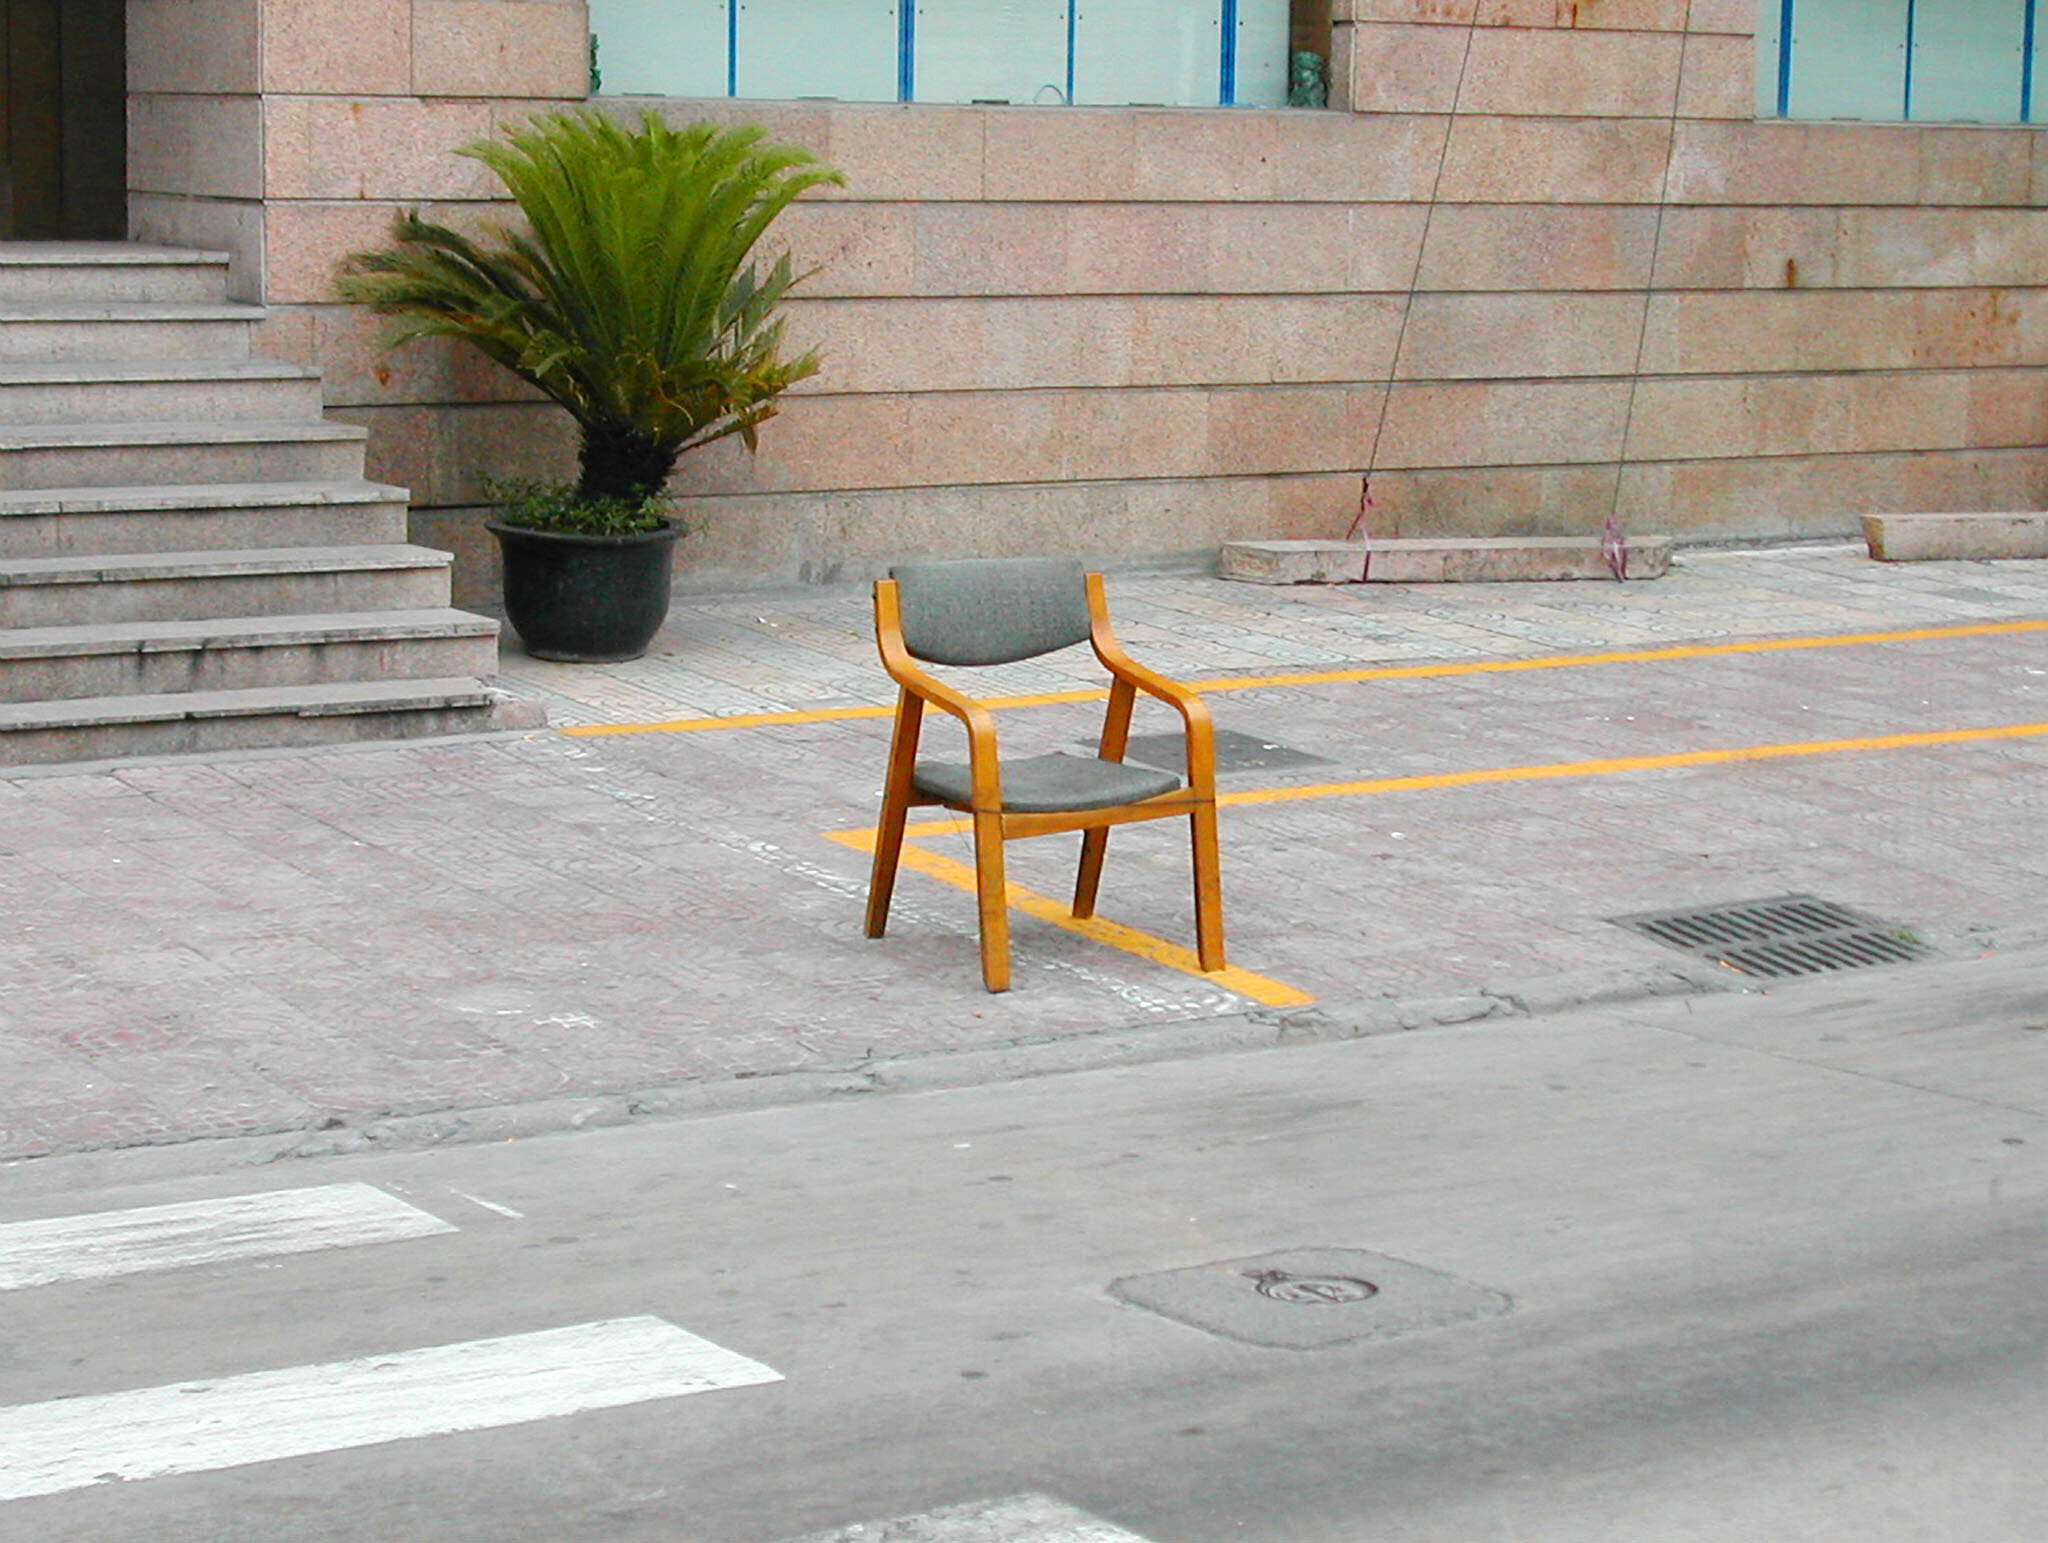  Shanghai Chair No. 1 